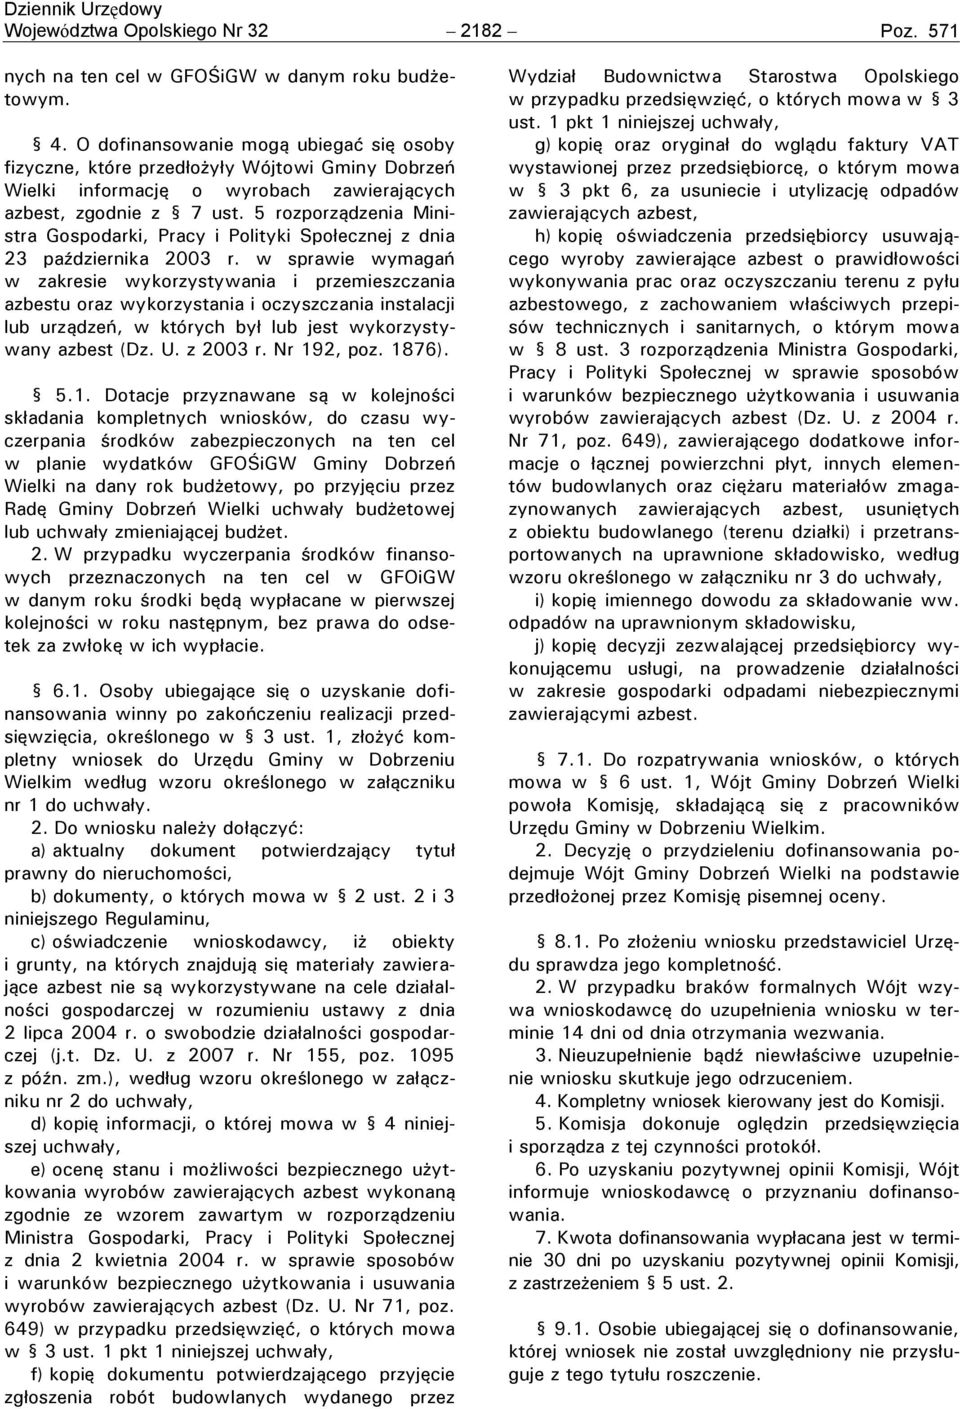 5 rozporządzenia Ministra Gospodarki, Pracy i Polityki Społecznej z dnia 23 października 2003 r.